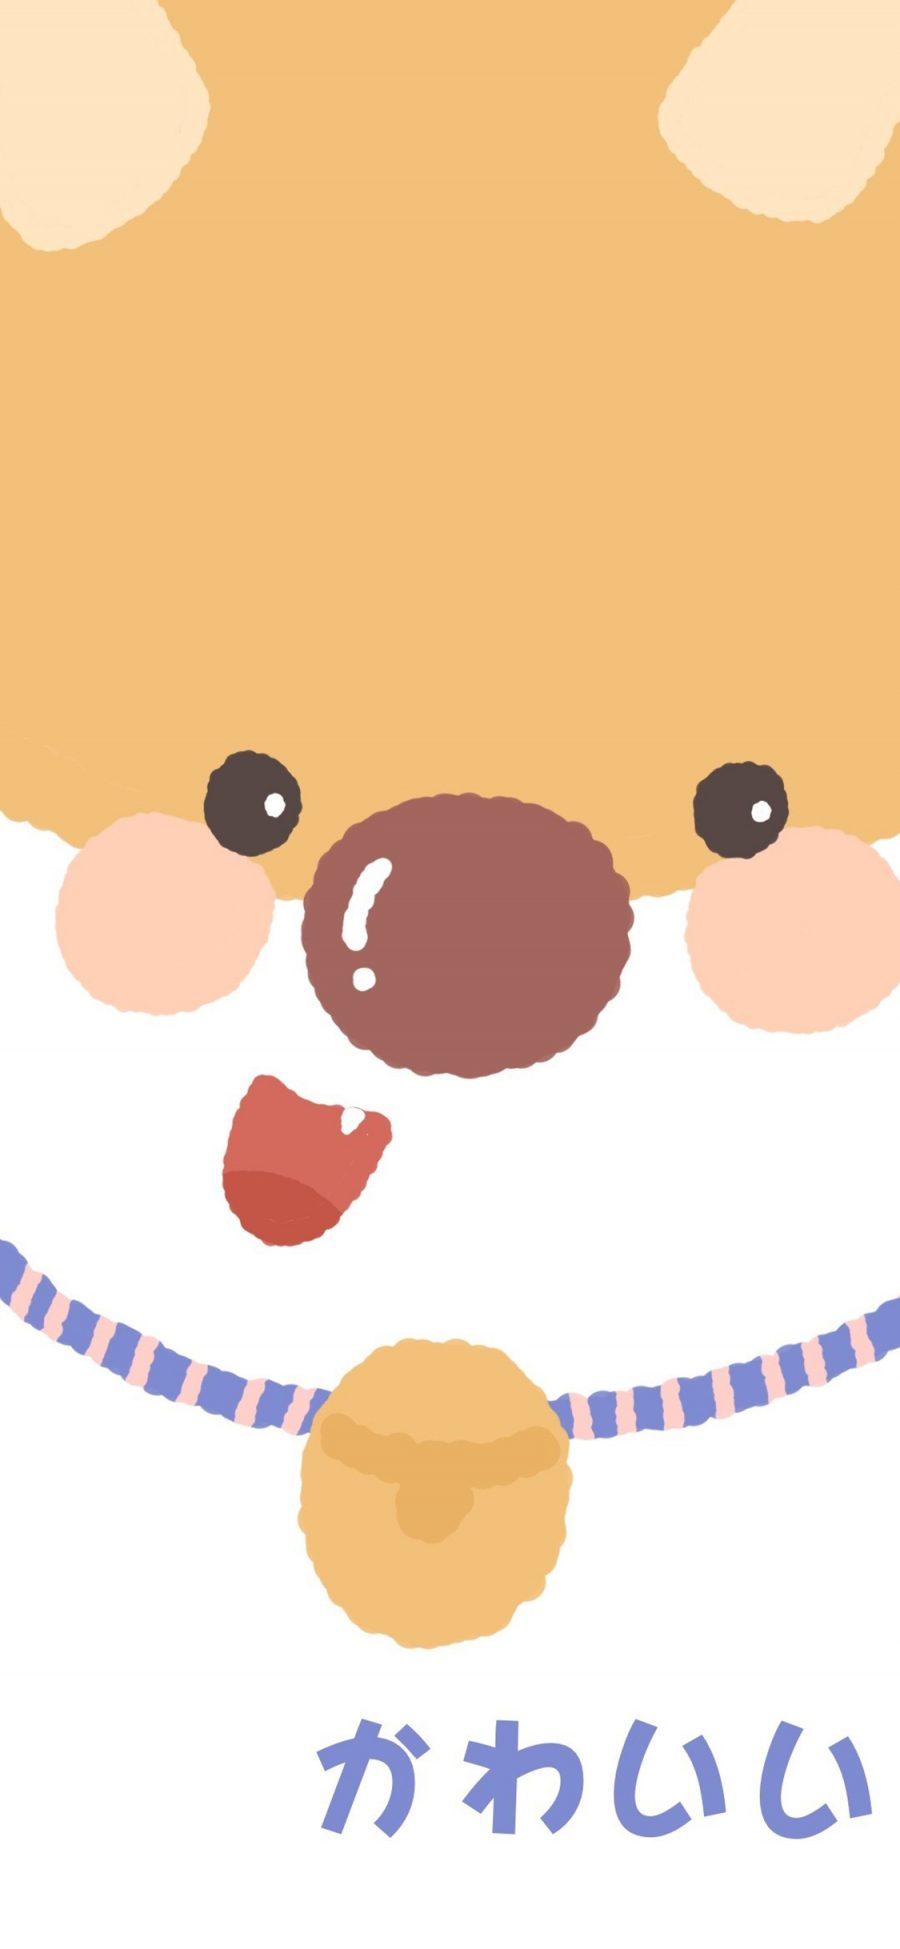 [2436×1125]卡通 柴犬 铃铛 可爱（取自微博：是谁偷吃了奶酪） 苹果手机动漫壁纸图片